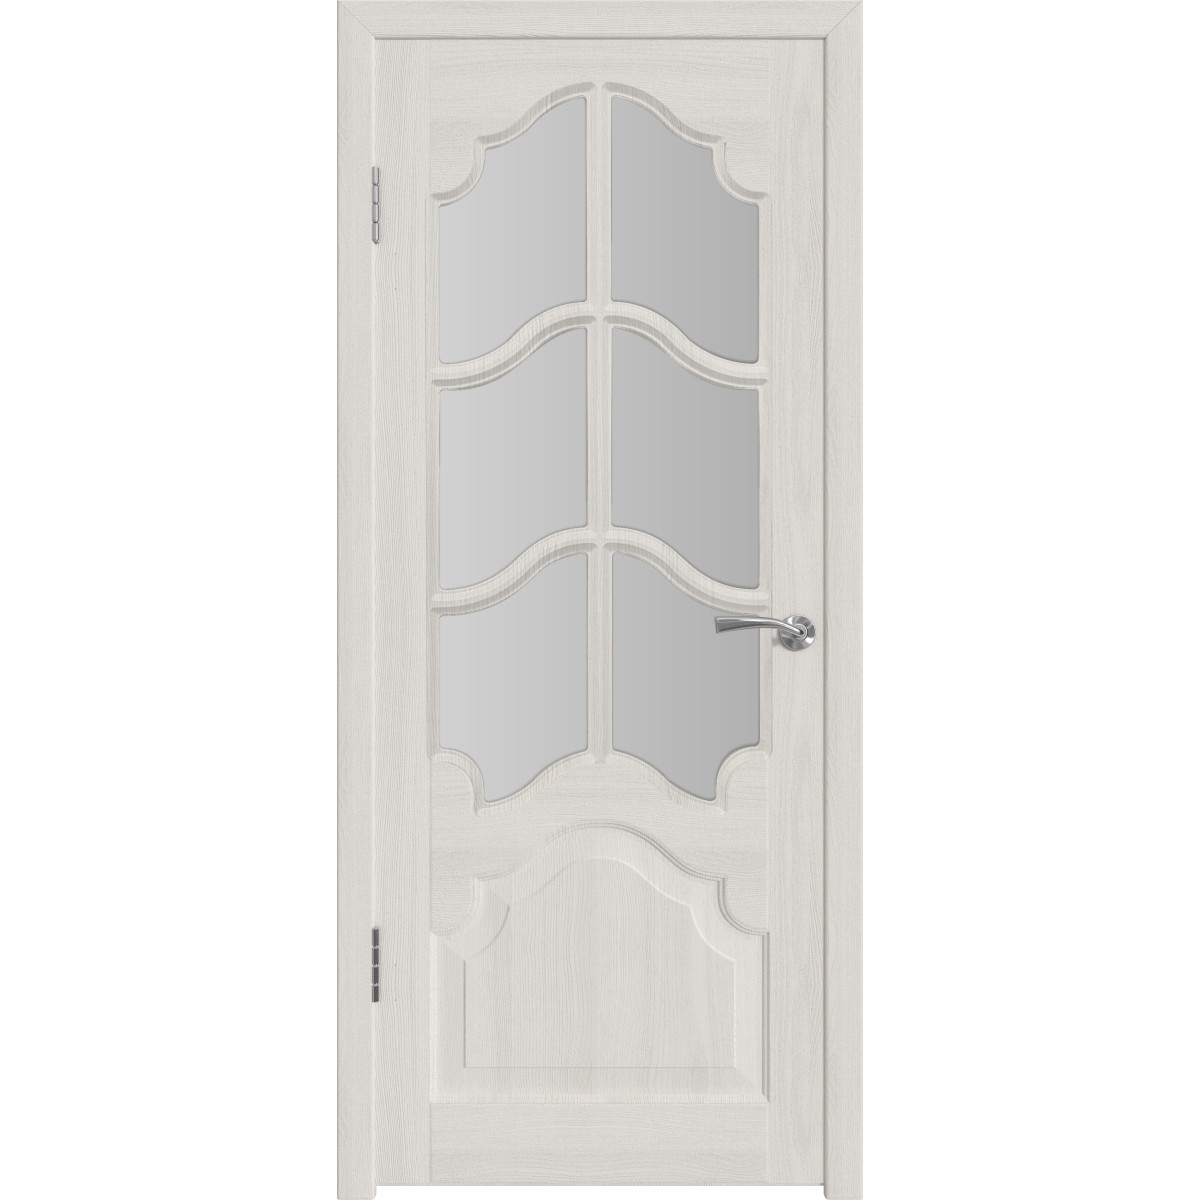 Дверь межкомнатная остеклённая с замком и петлями в комплекте Венеция 70x200 см ПП цвет белёный дуб